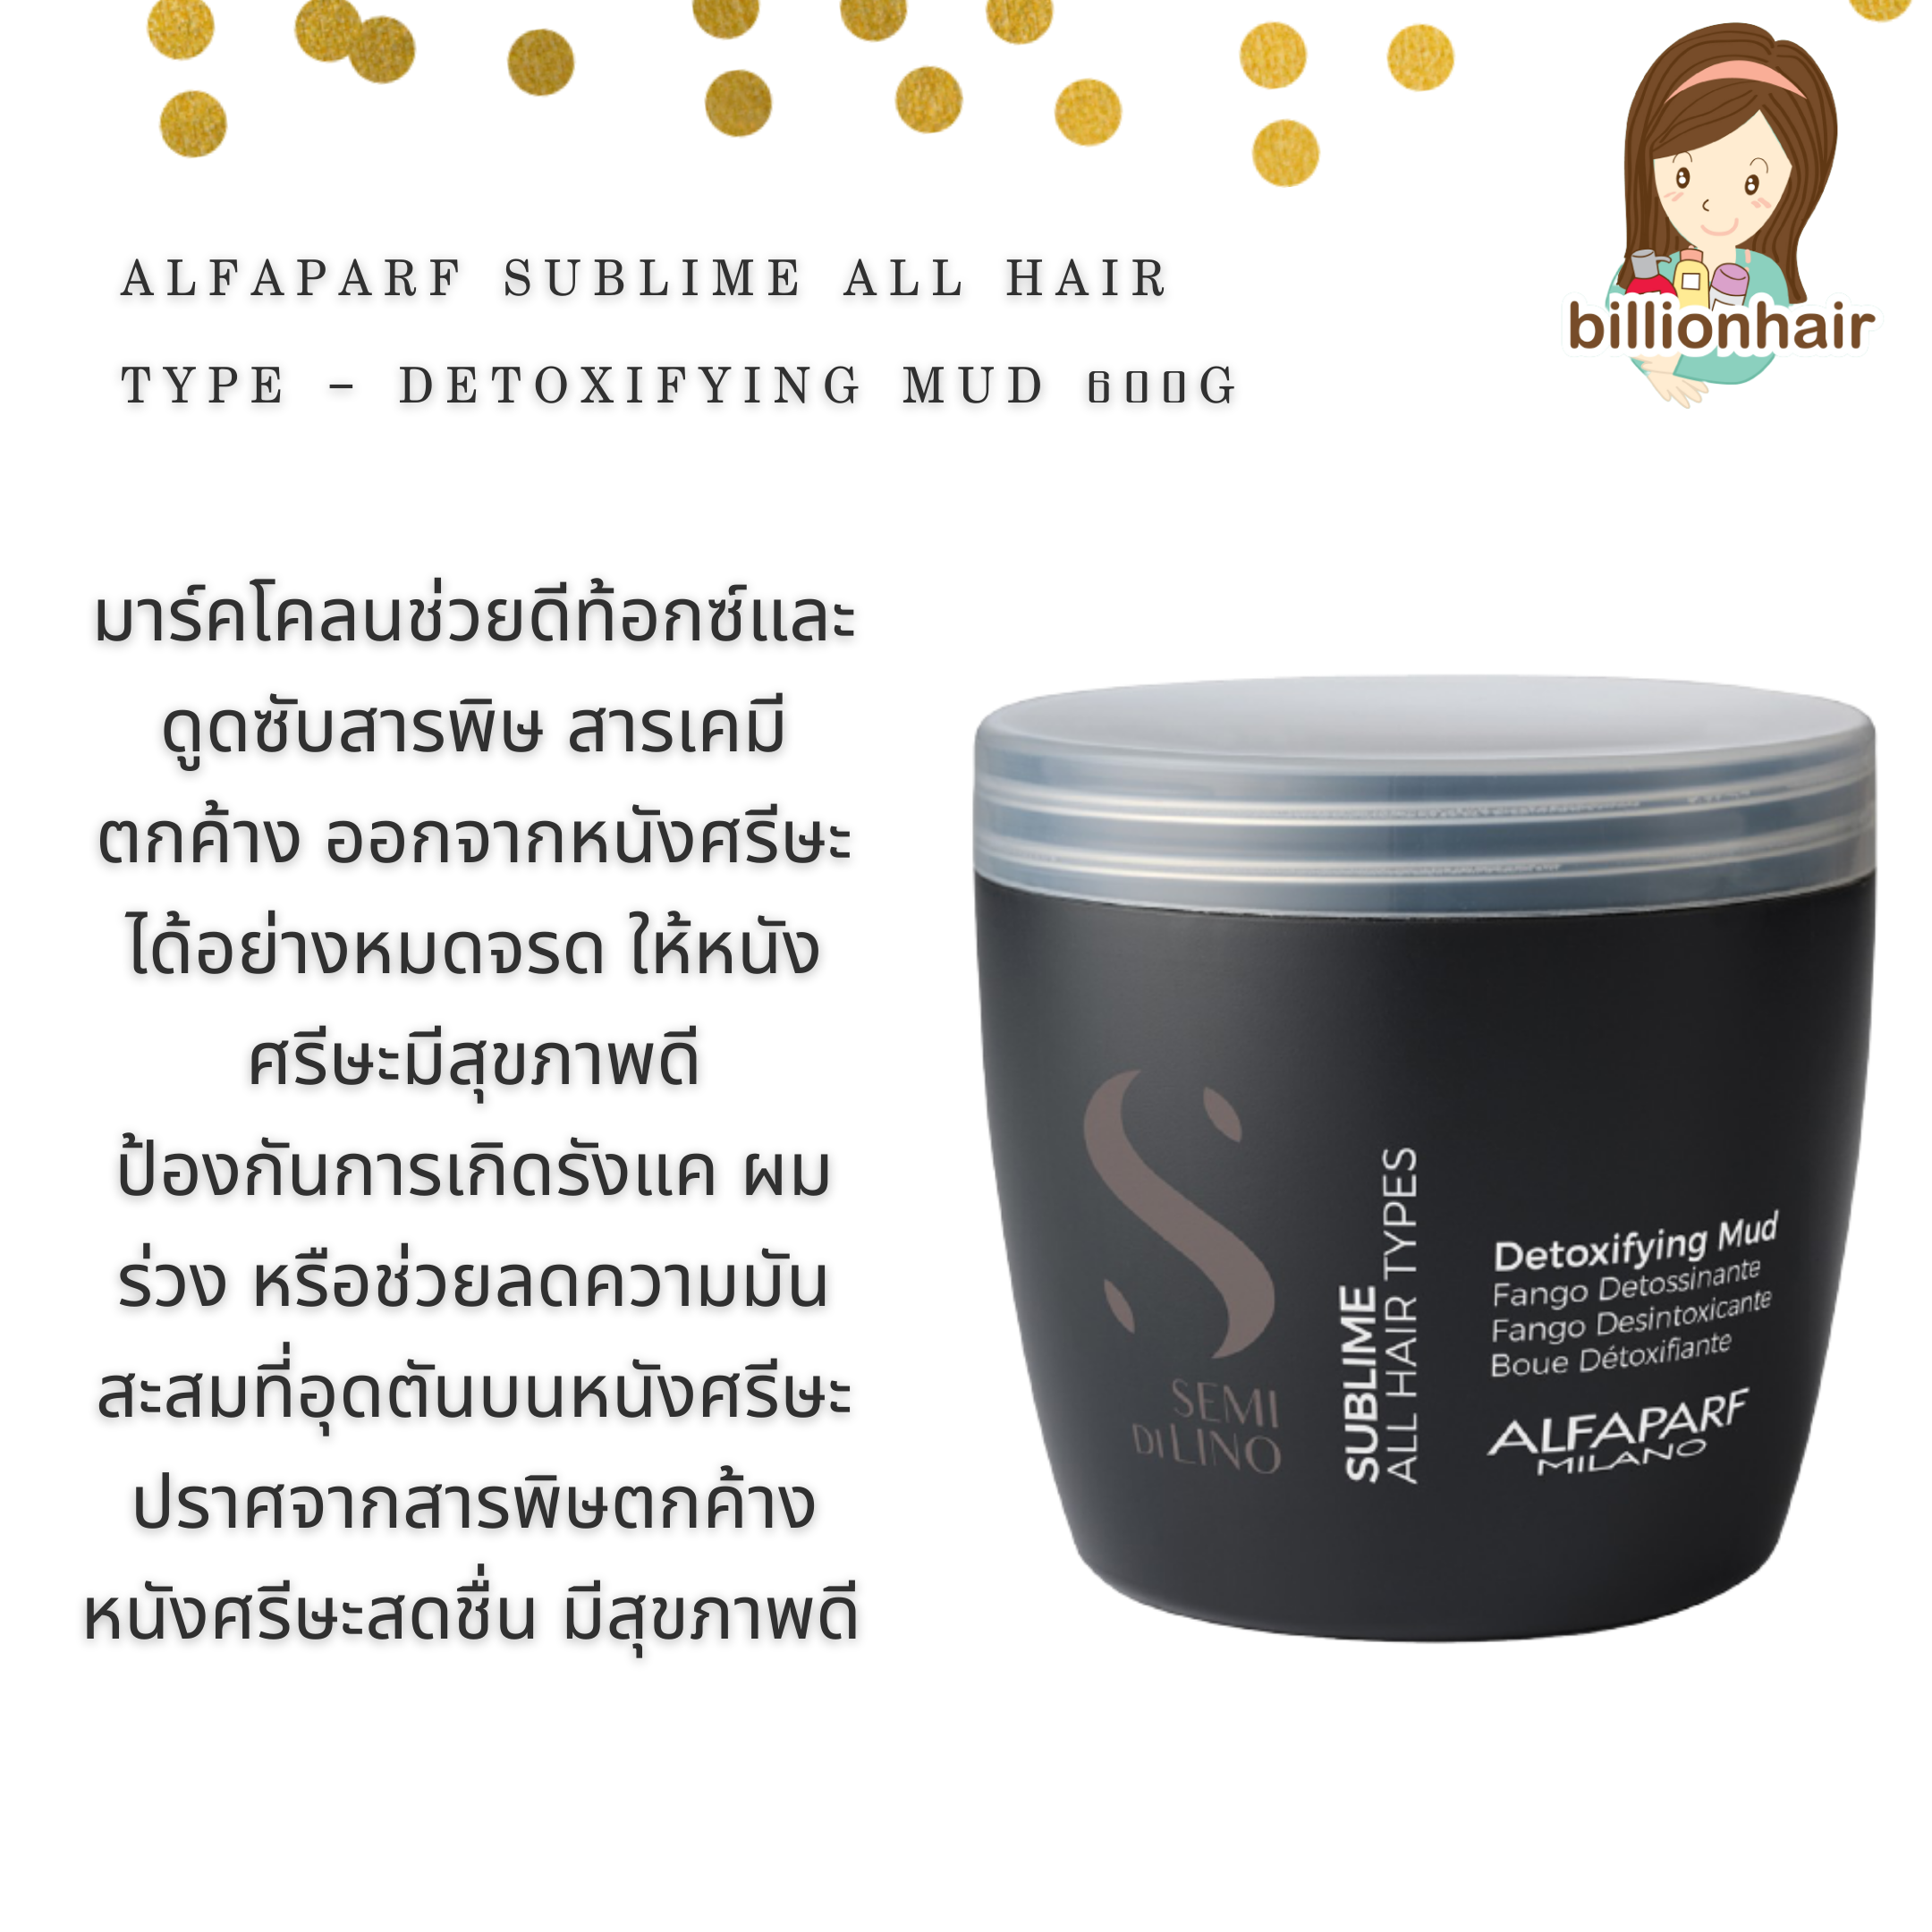 Alfaparf Sublime all hair type - Detoxifying Mud 500g  มาร์คโคลนช่วยดีท้อกซ์และดูดซับสารพิษ สารเคมีตกค้าง ออกจากหนังศรีษ